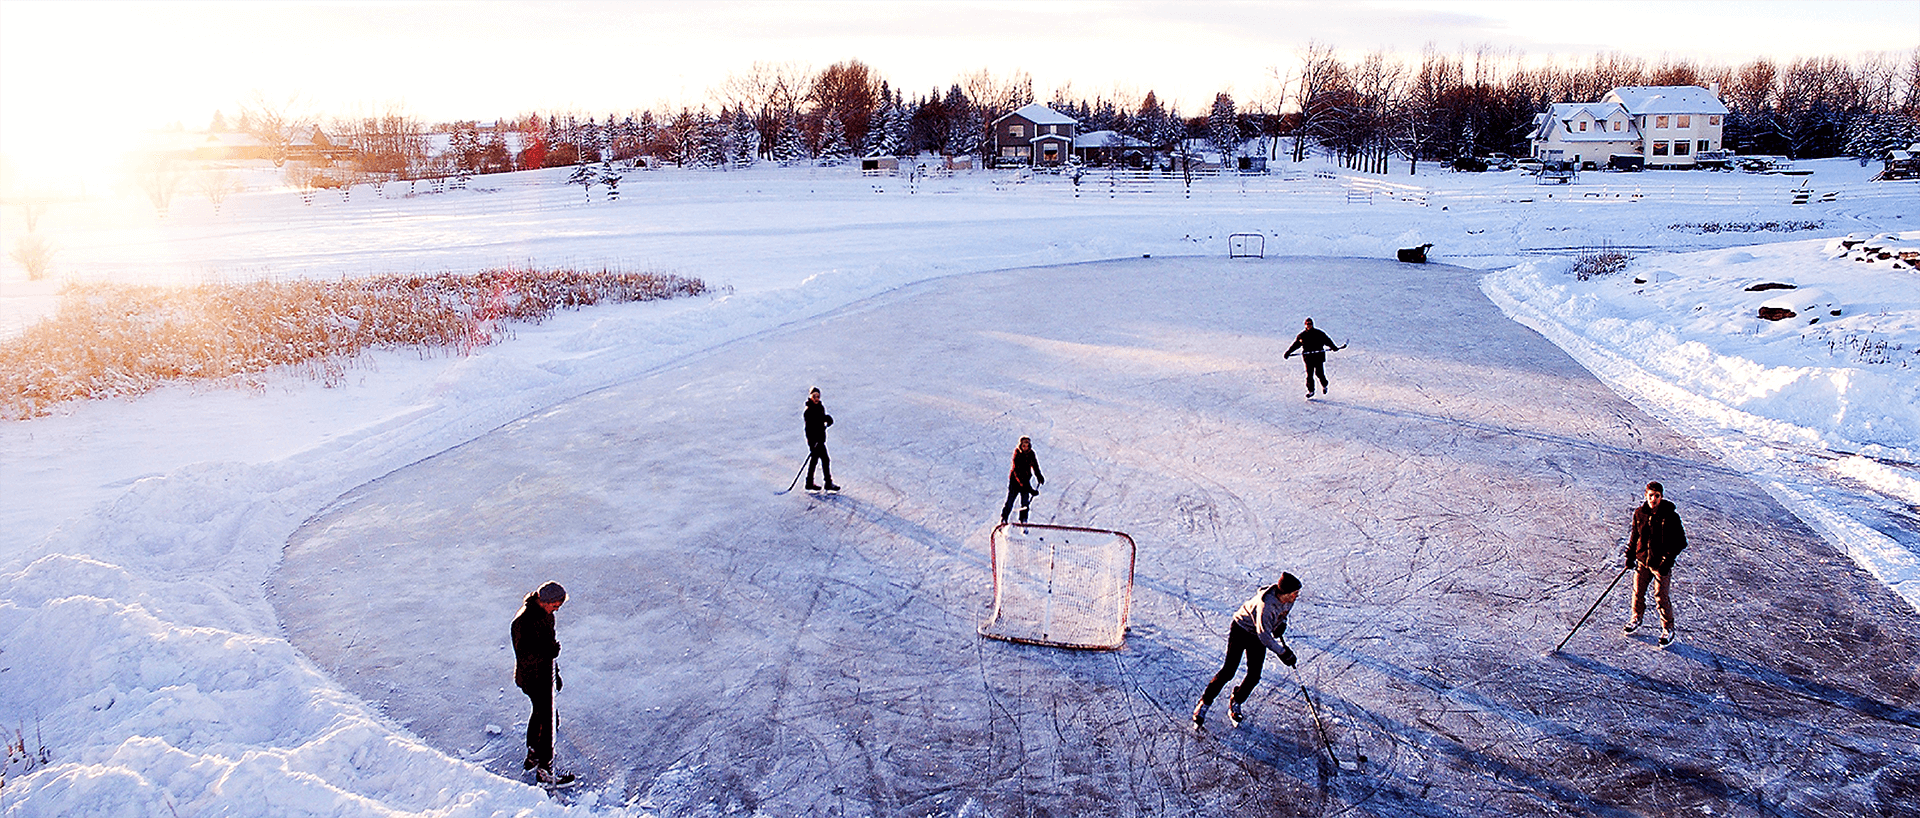 Hockey on a Pond